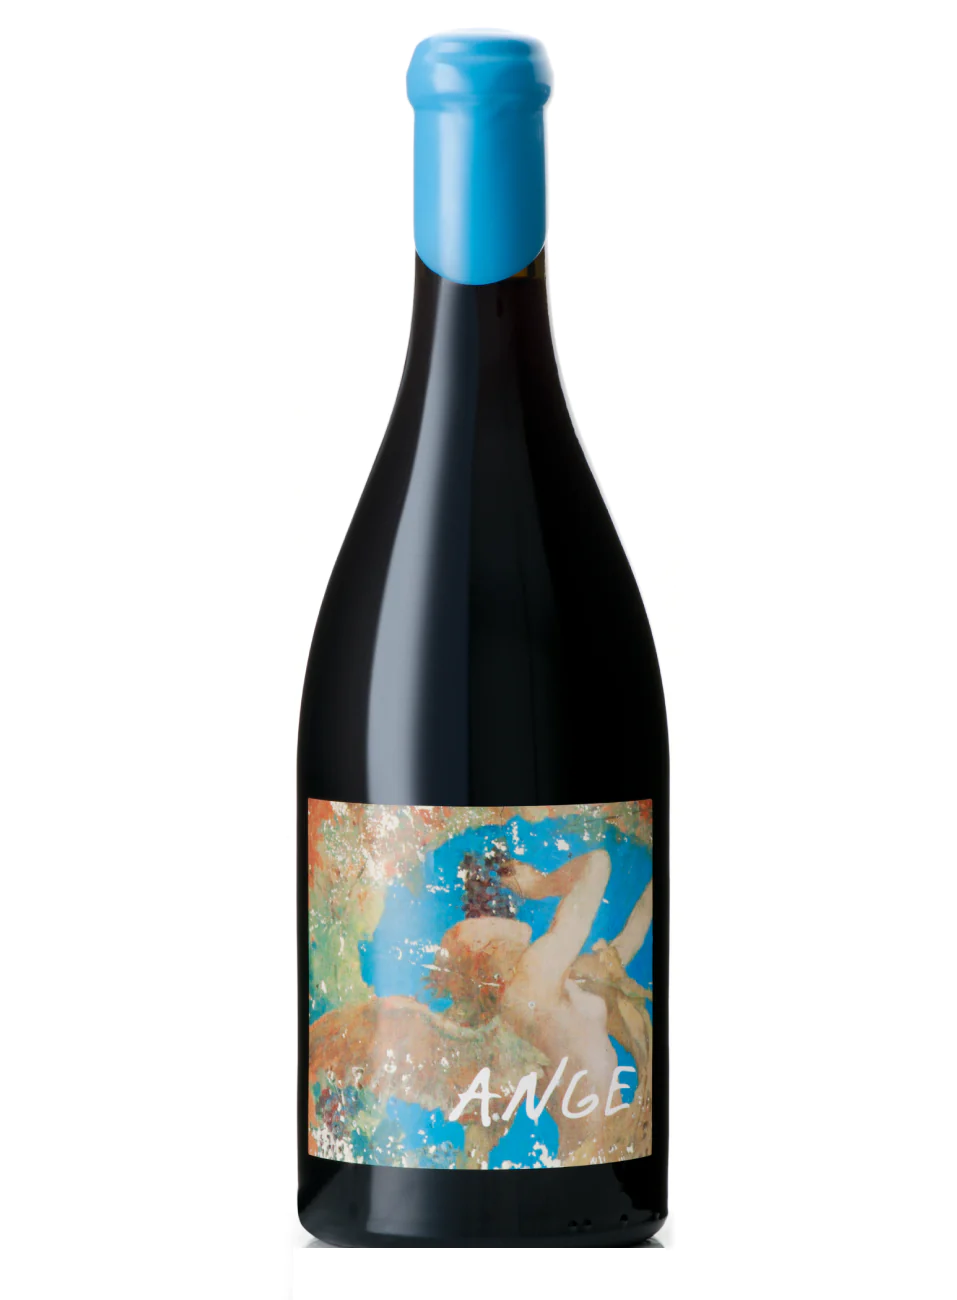 l'Ecu "Ange" Vin de France Loire Valley 2015 750ml